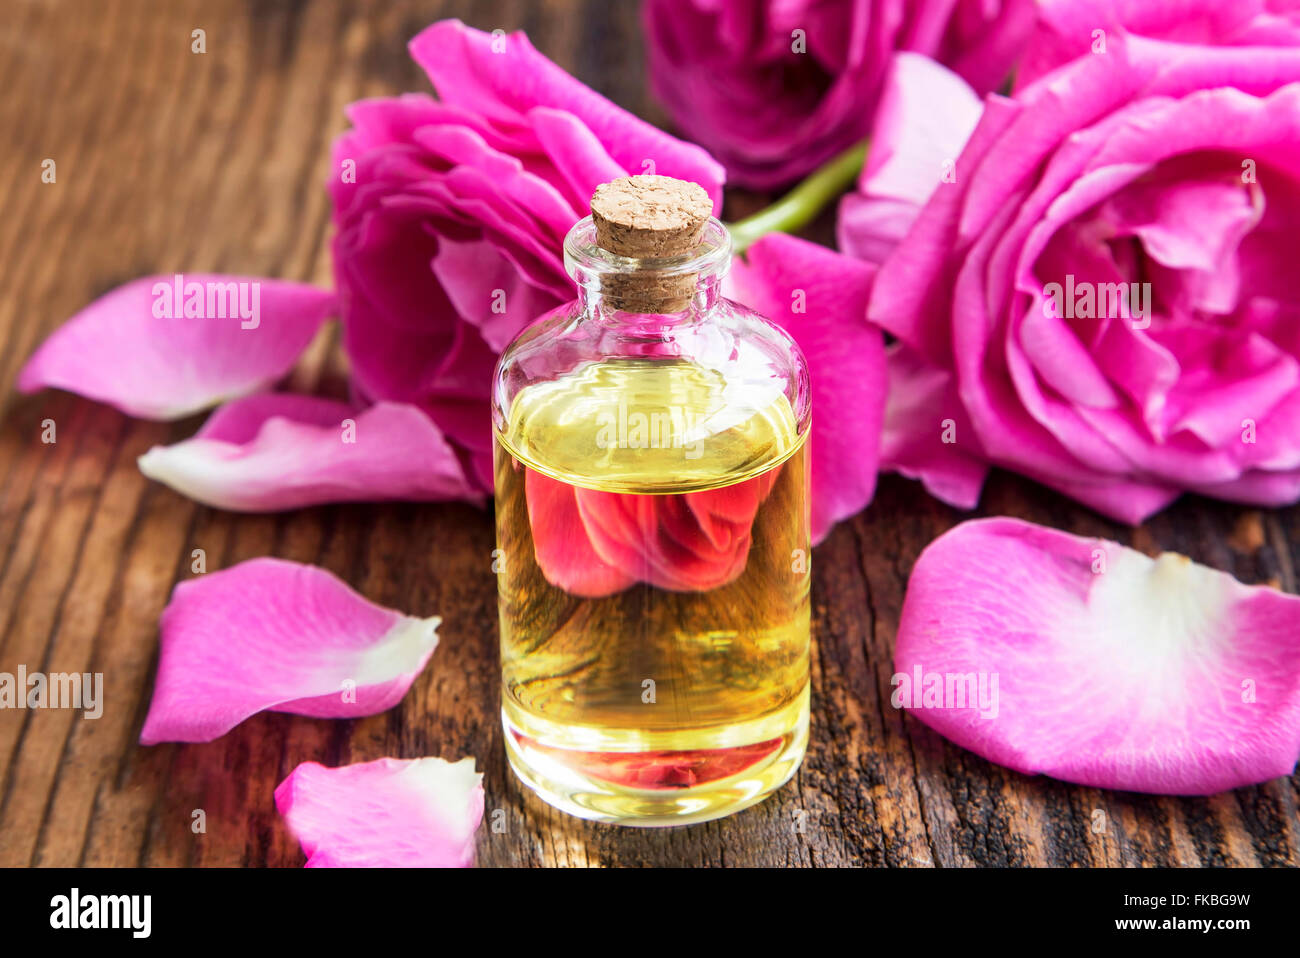 Rose Atherisches Ol In Eine Flasche Mit Rosa Rosen Und Rosenblatter Auf Holzbrett Stockfotografie Alamy